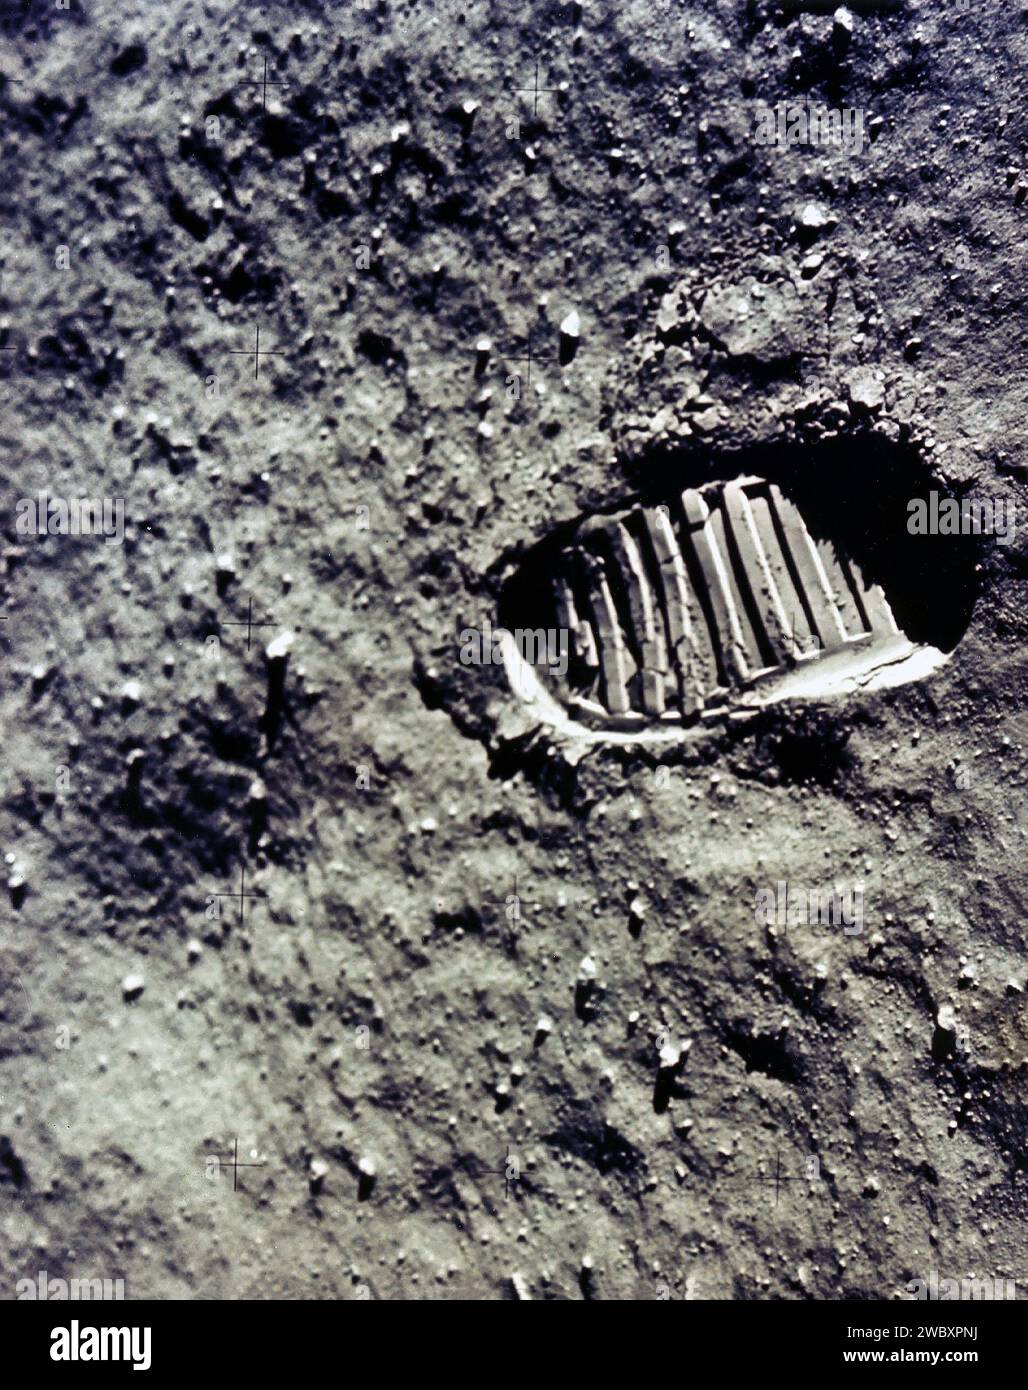 Prima impronta umana sulla superficie della luna durante la missione spaziale Apollo 11, Johnson Space Center, NASA, 21 luglio 1969 Foto Stock